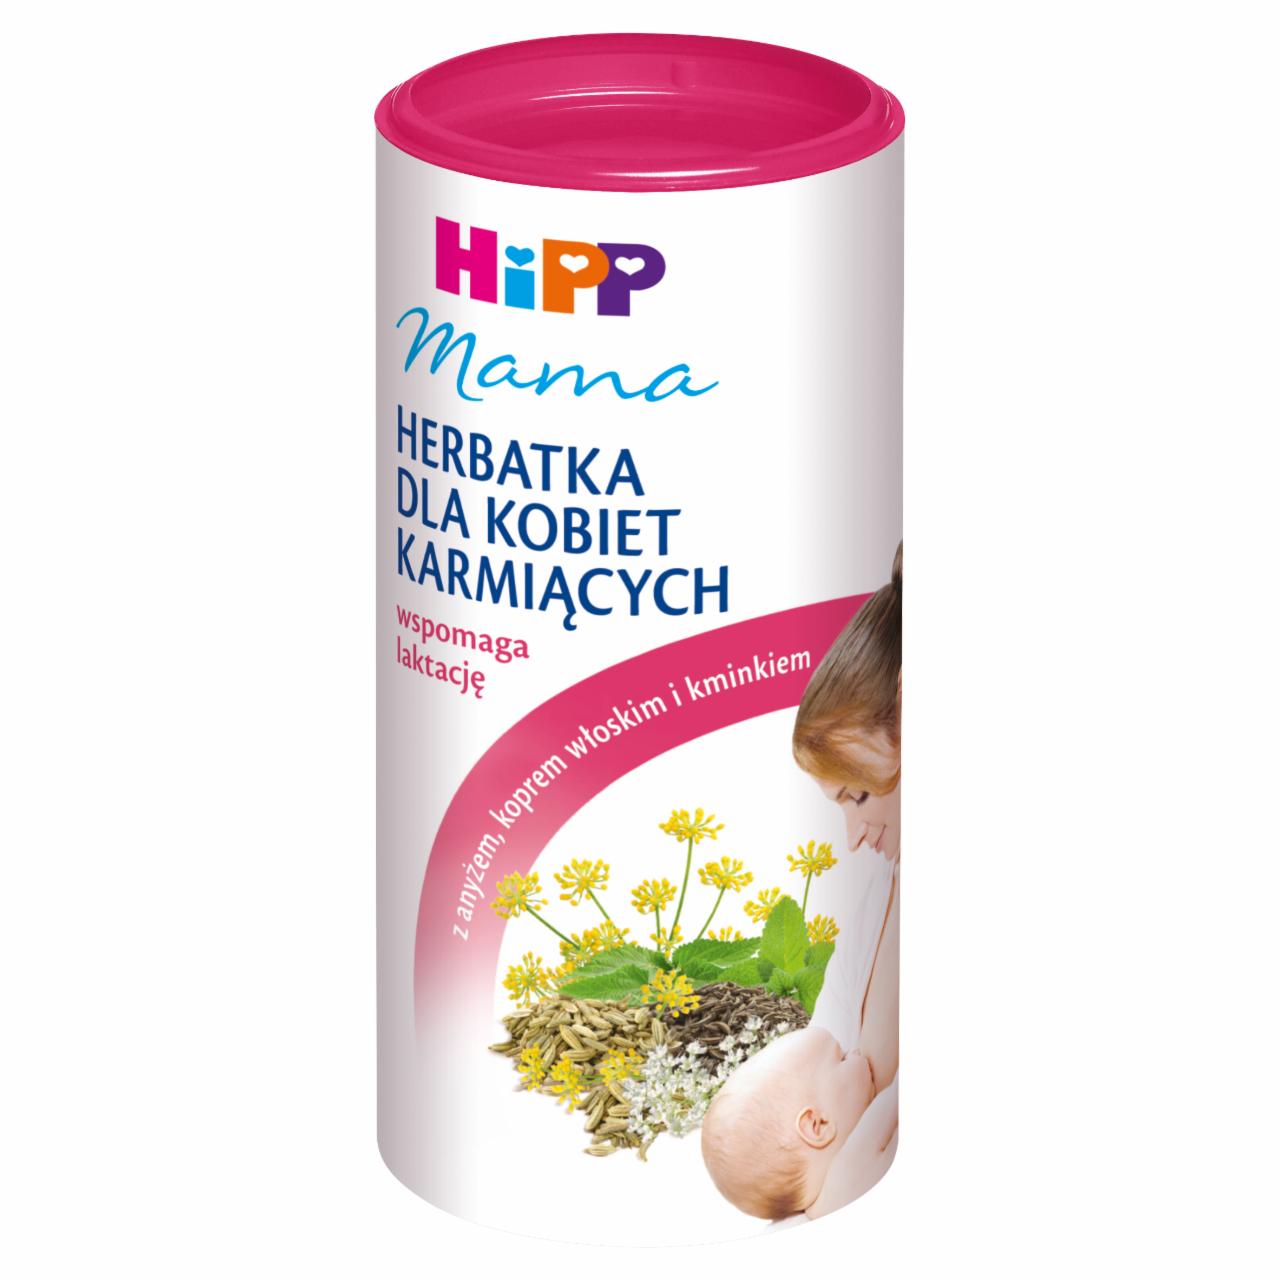 Zdjęcia - HiPP Mama Herbatka dla kobiet karmiących 200 g